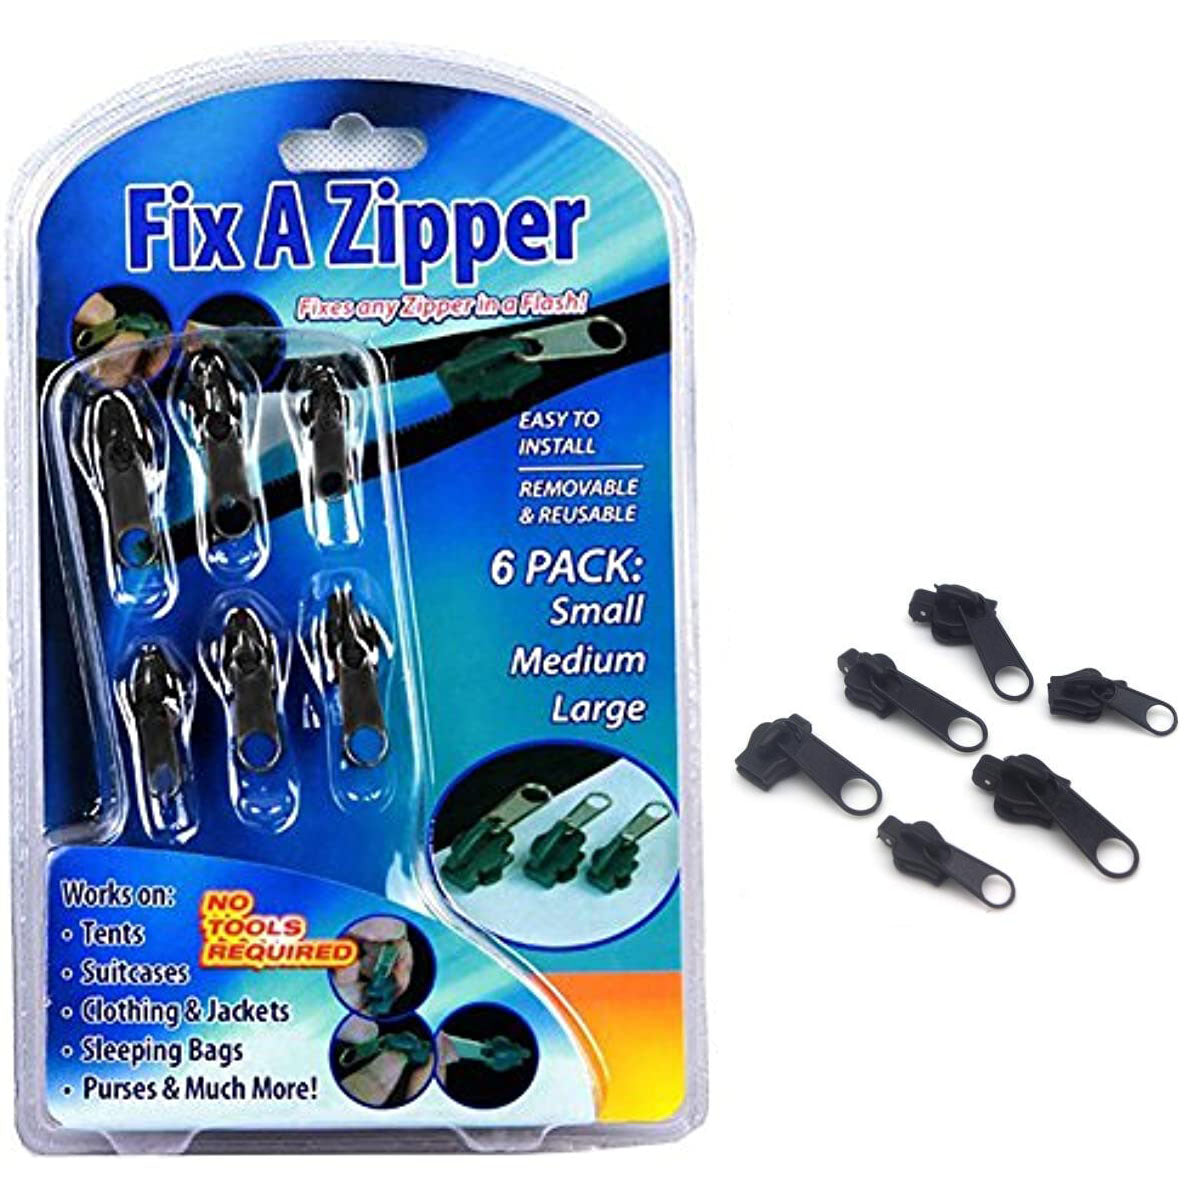 6 Pcs/Set Instant Zipper Universal Instant Fix Zipper Repair